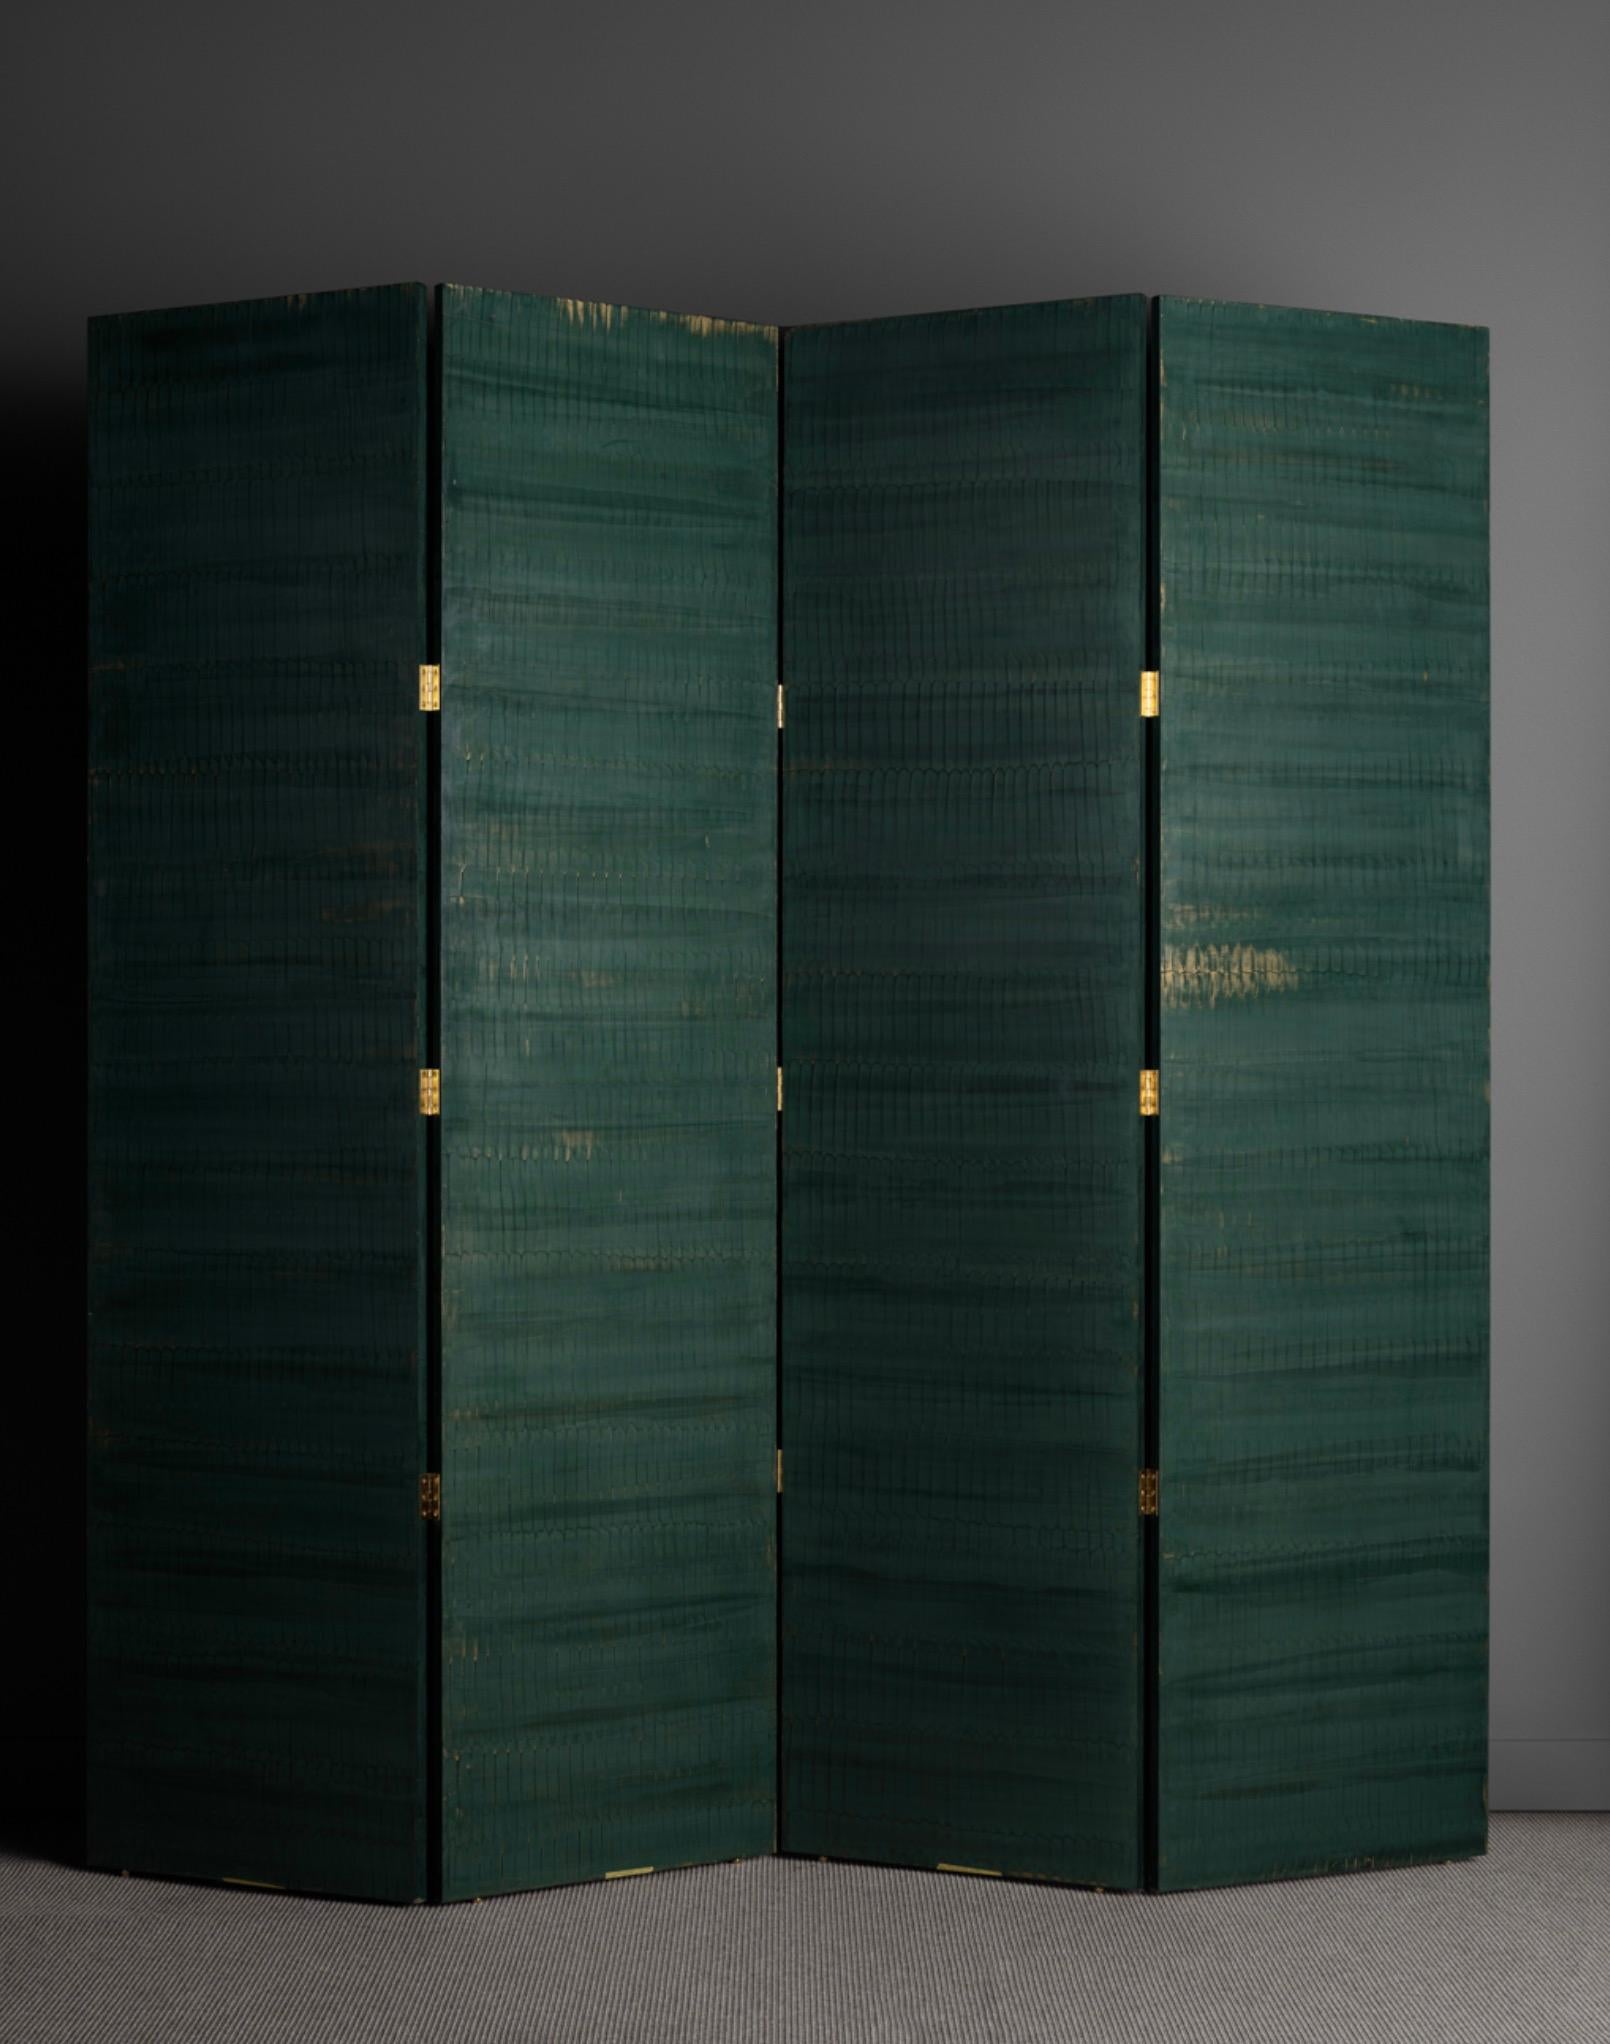 Yolande Milan Batteau (geb. 1970)
USA, 2022
Vierwandige Leinwand aus Holz, Marmorstaub, Abalone, handgefertigten Glasuren und Wachsglimmern.